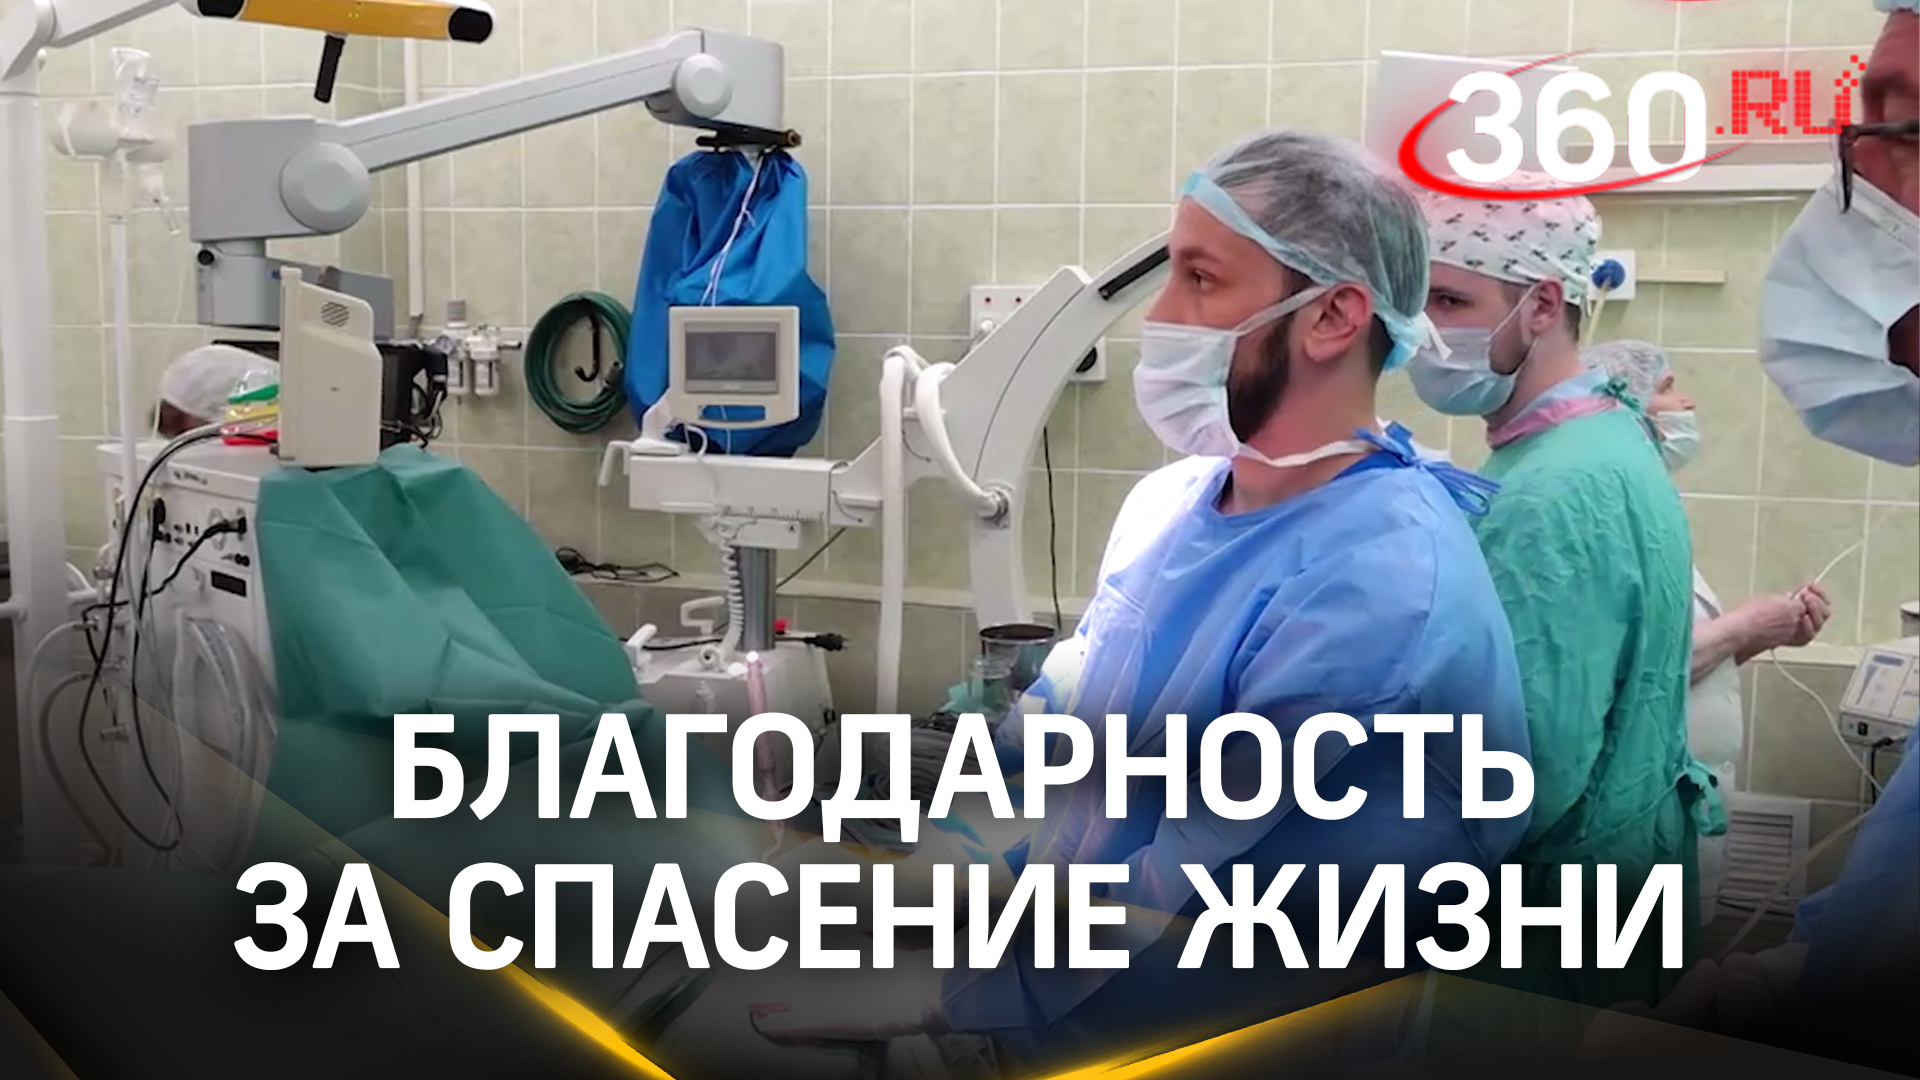 В Подольской больнице провели успешную операцию по устранению назальной ликвореи